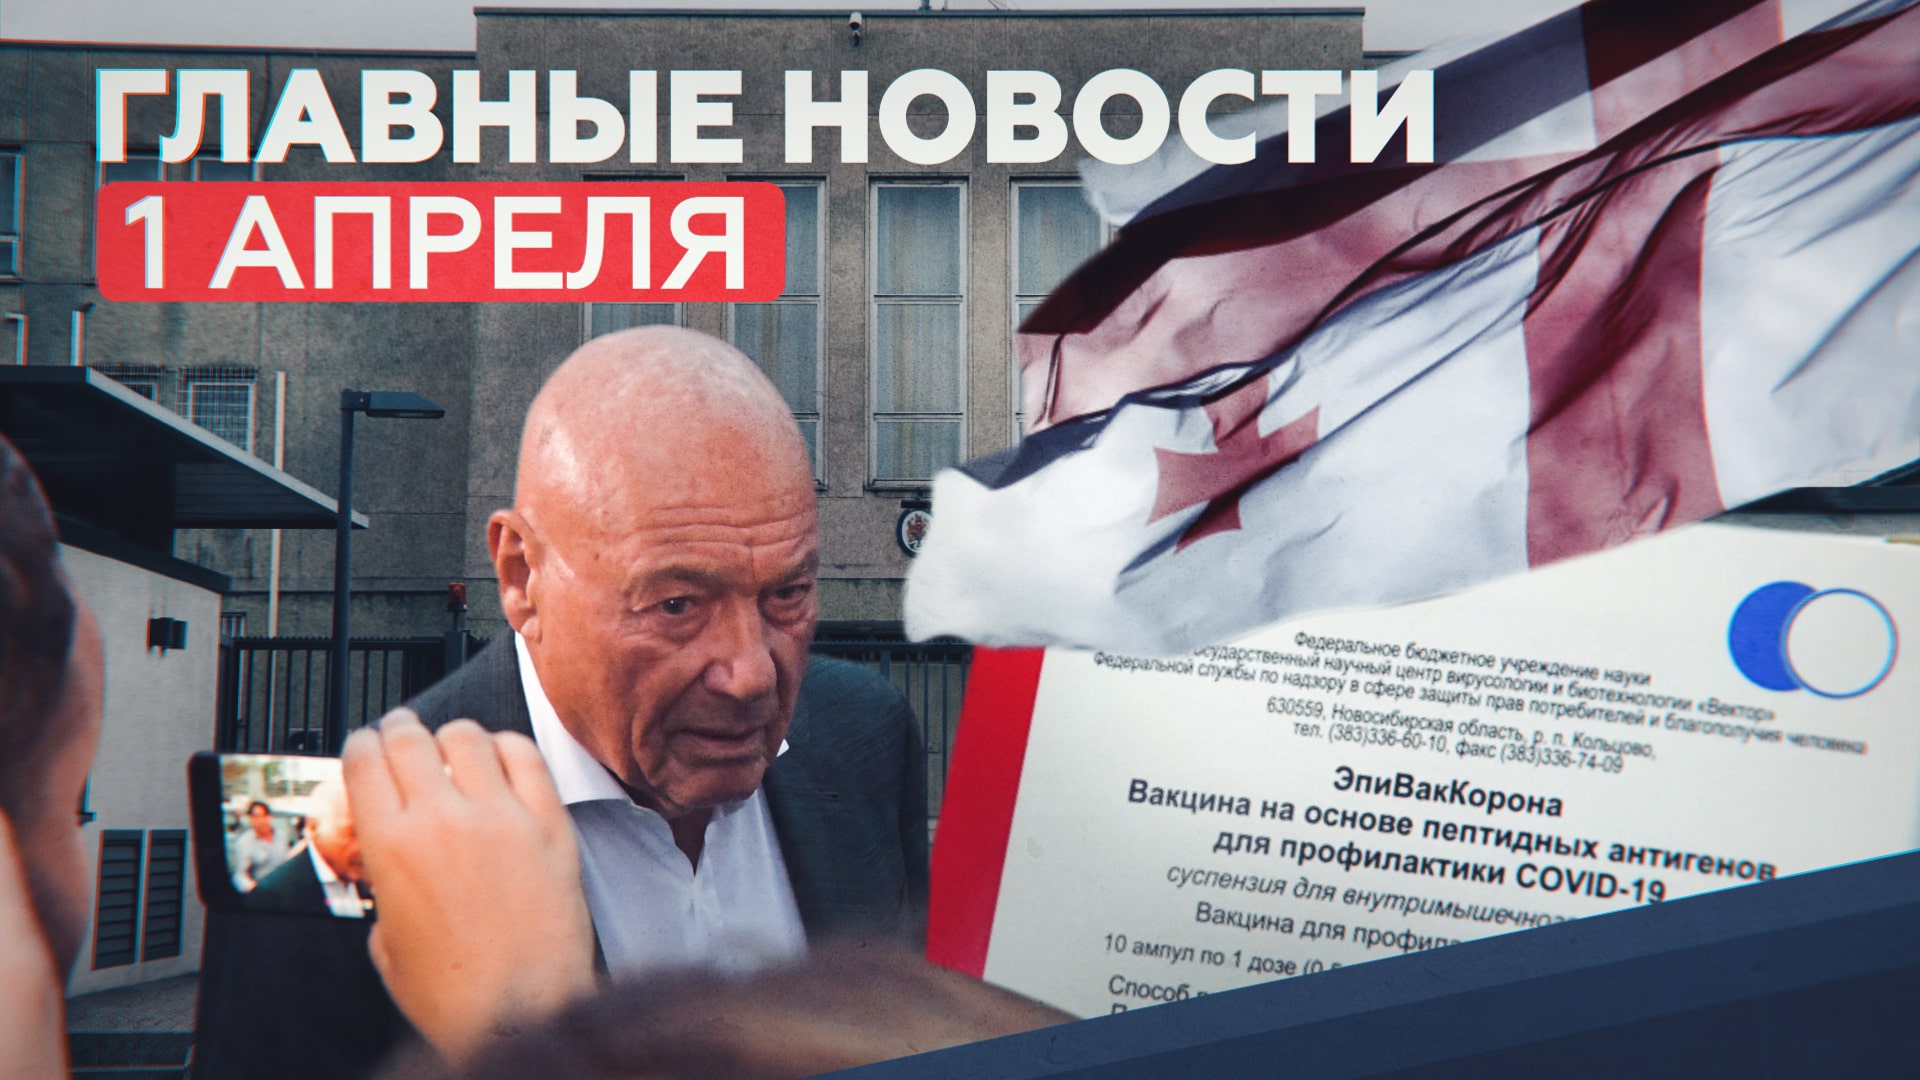 Новости дня — 1 апреля: цена «ЭпиВакКороны», Познер в Грузии, предотвращение теракта под Тверью